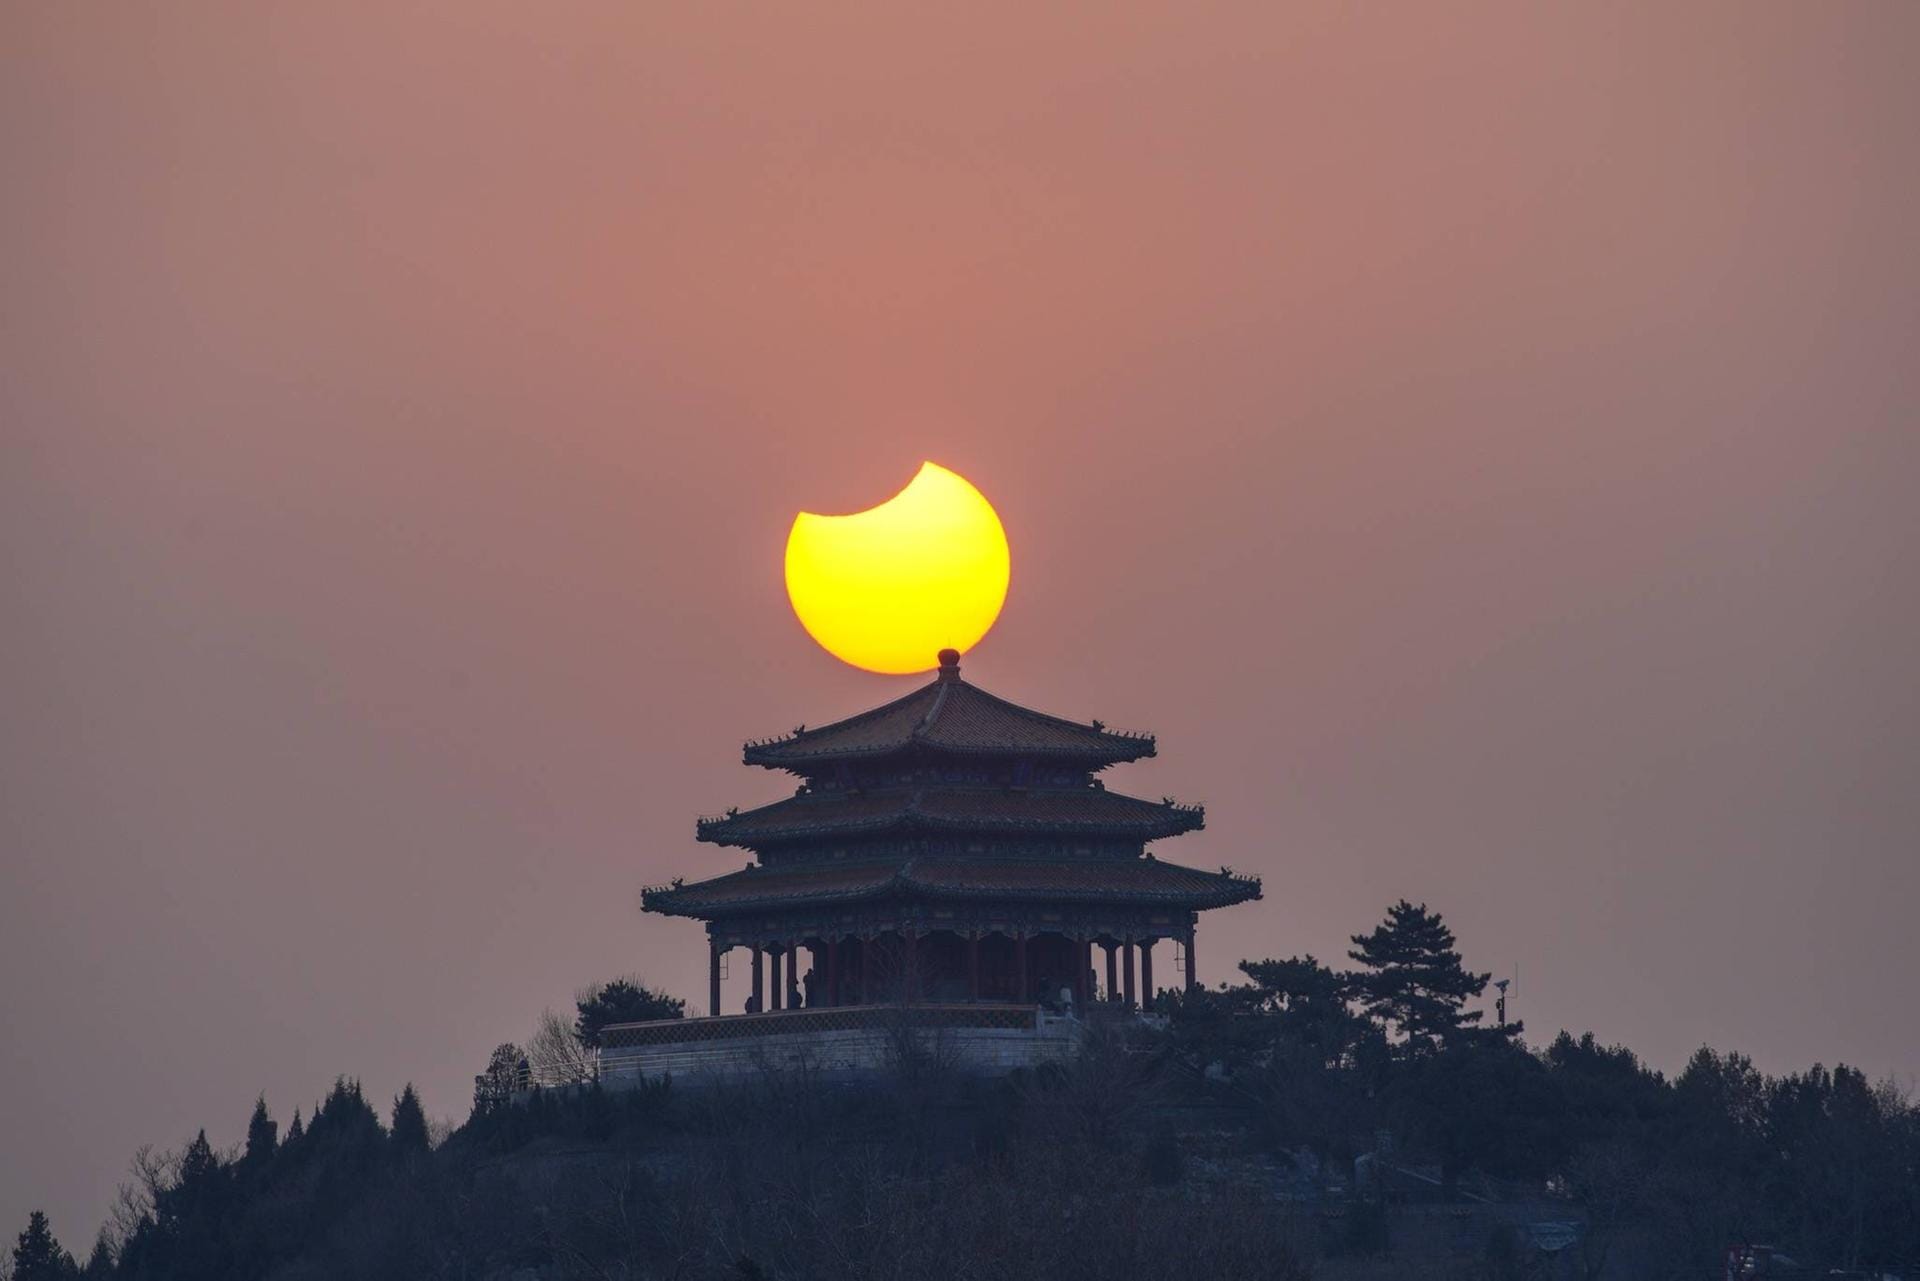 Partielle Sonnenfinsternis 2019 in China: Wer sich im Halbschatten des Mondes aufhält, kann eine partielle Finsternis erleben.